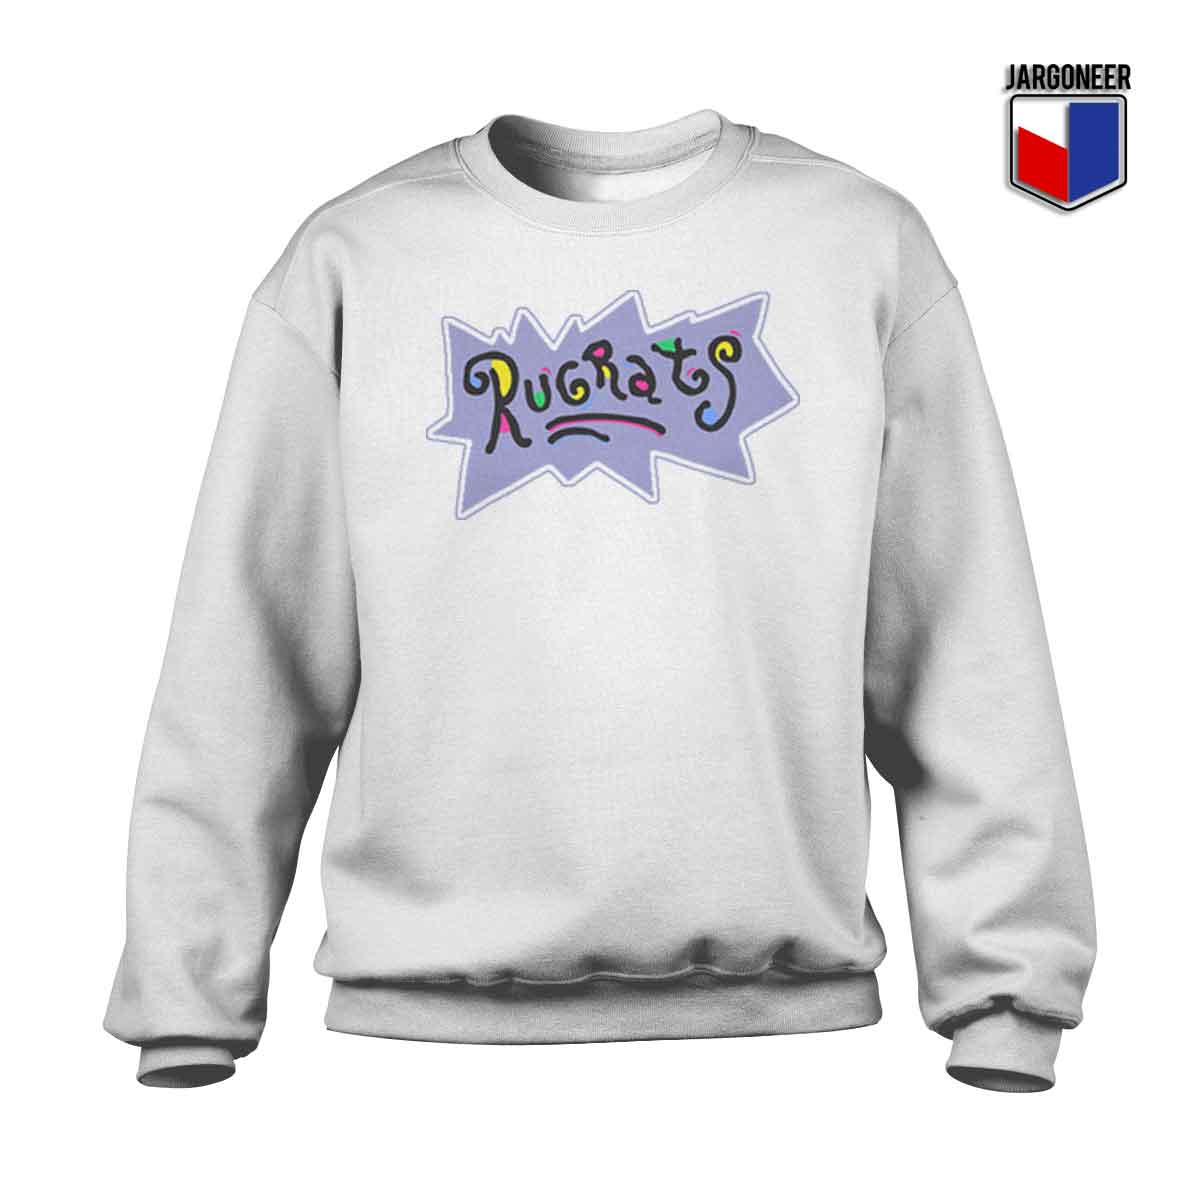 Rugrats Logo - Shop Unique Graphic Cool Shirt Designs